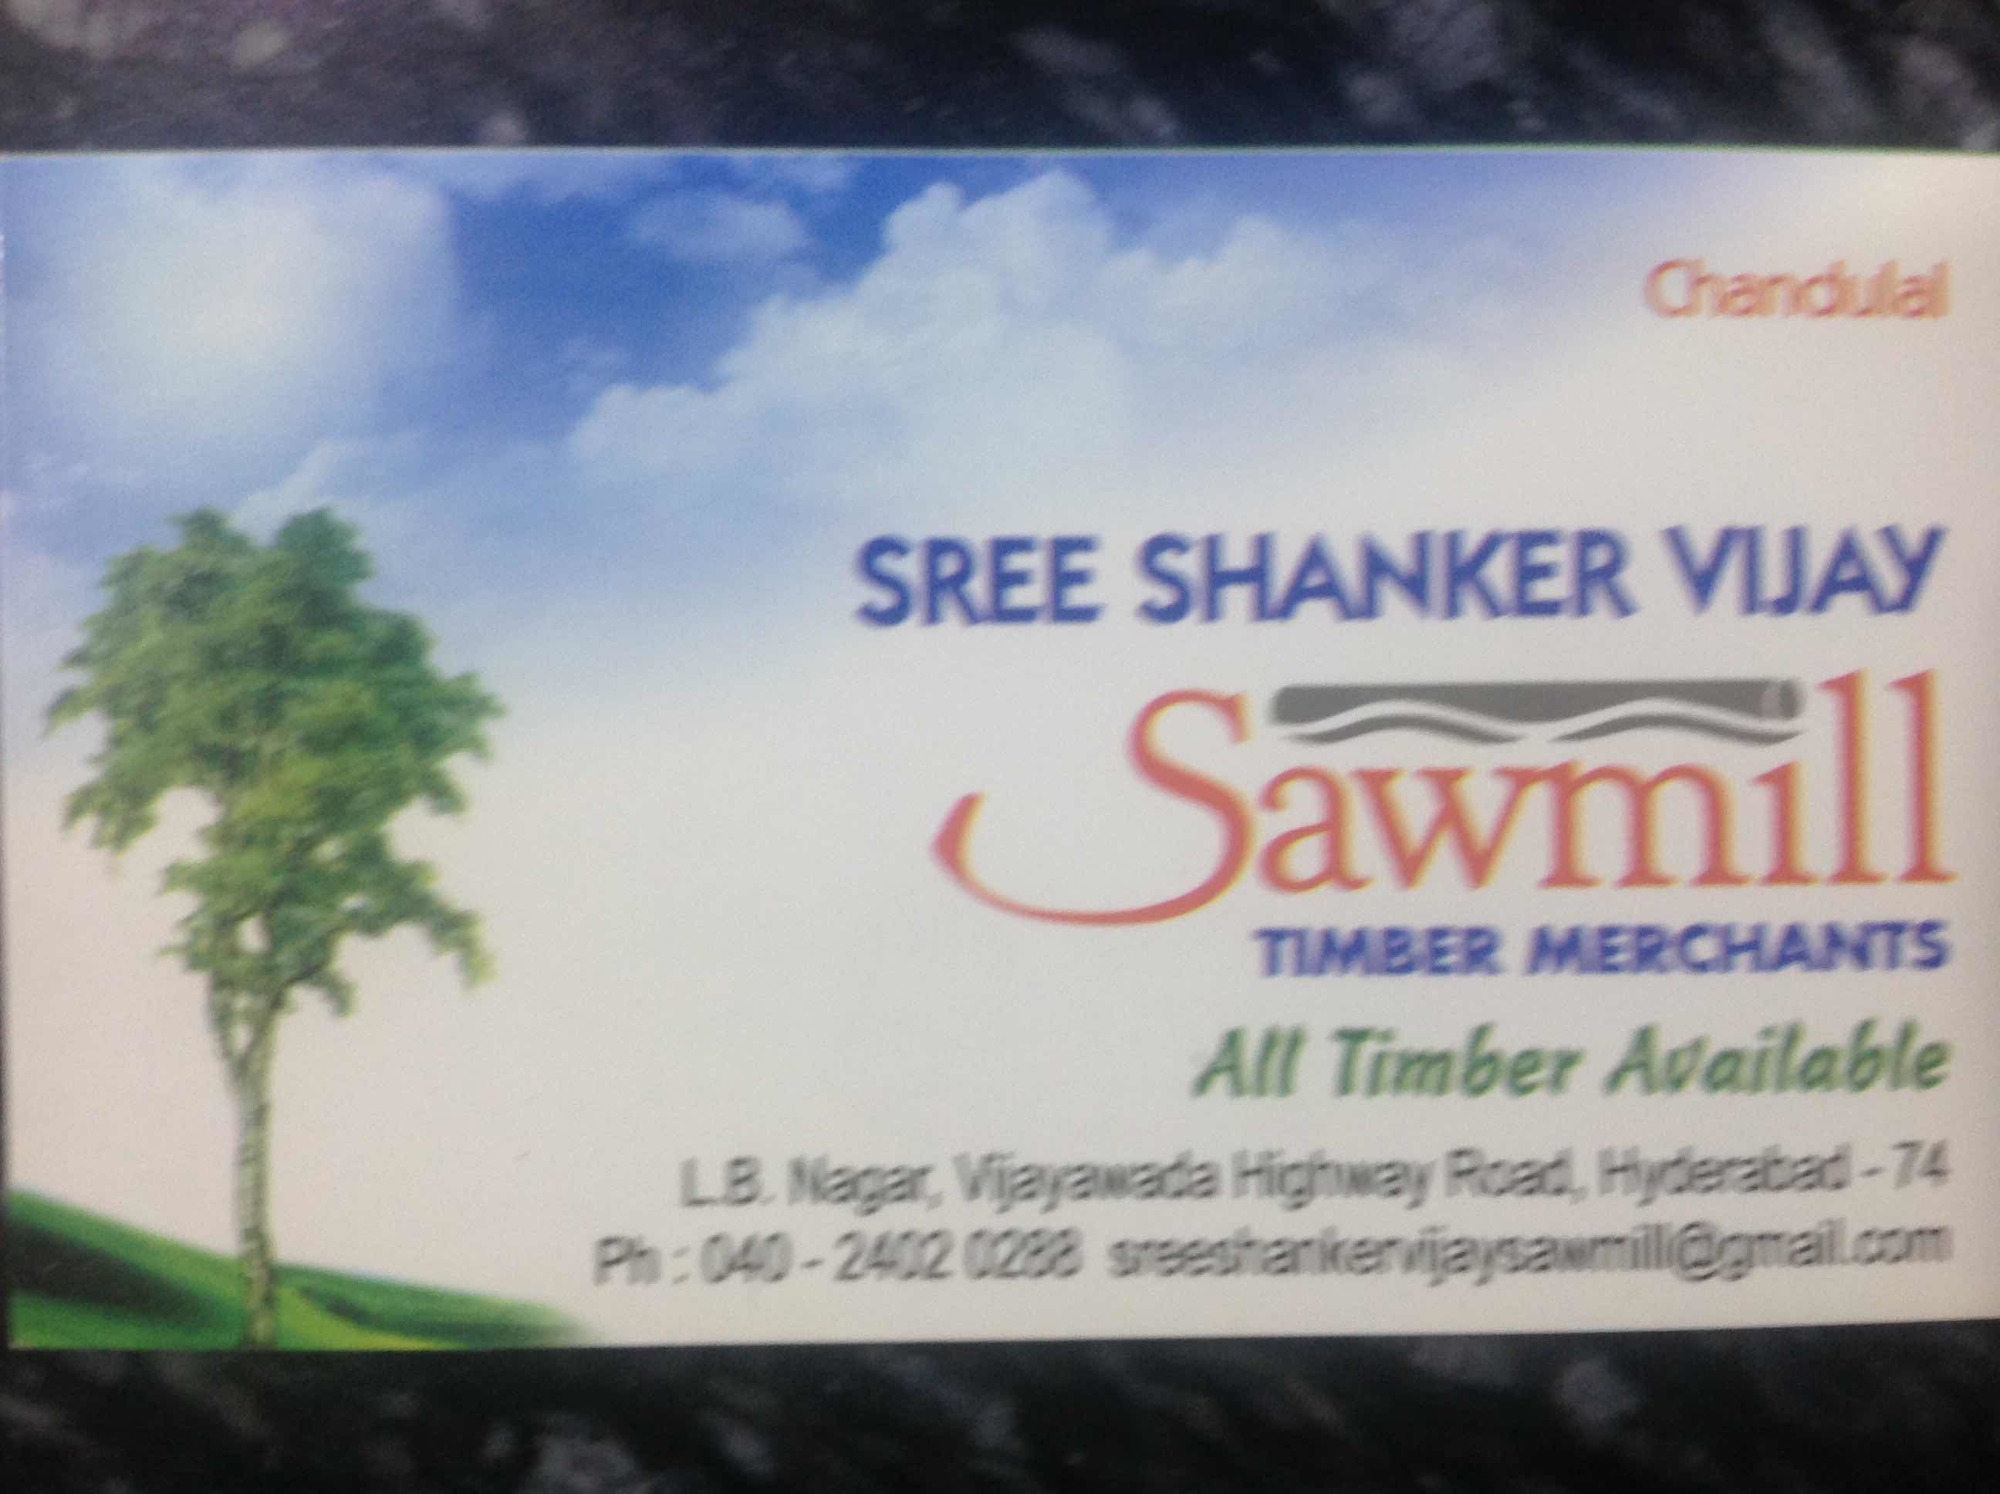 Sree Shanker Vijay Saw Mill